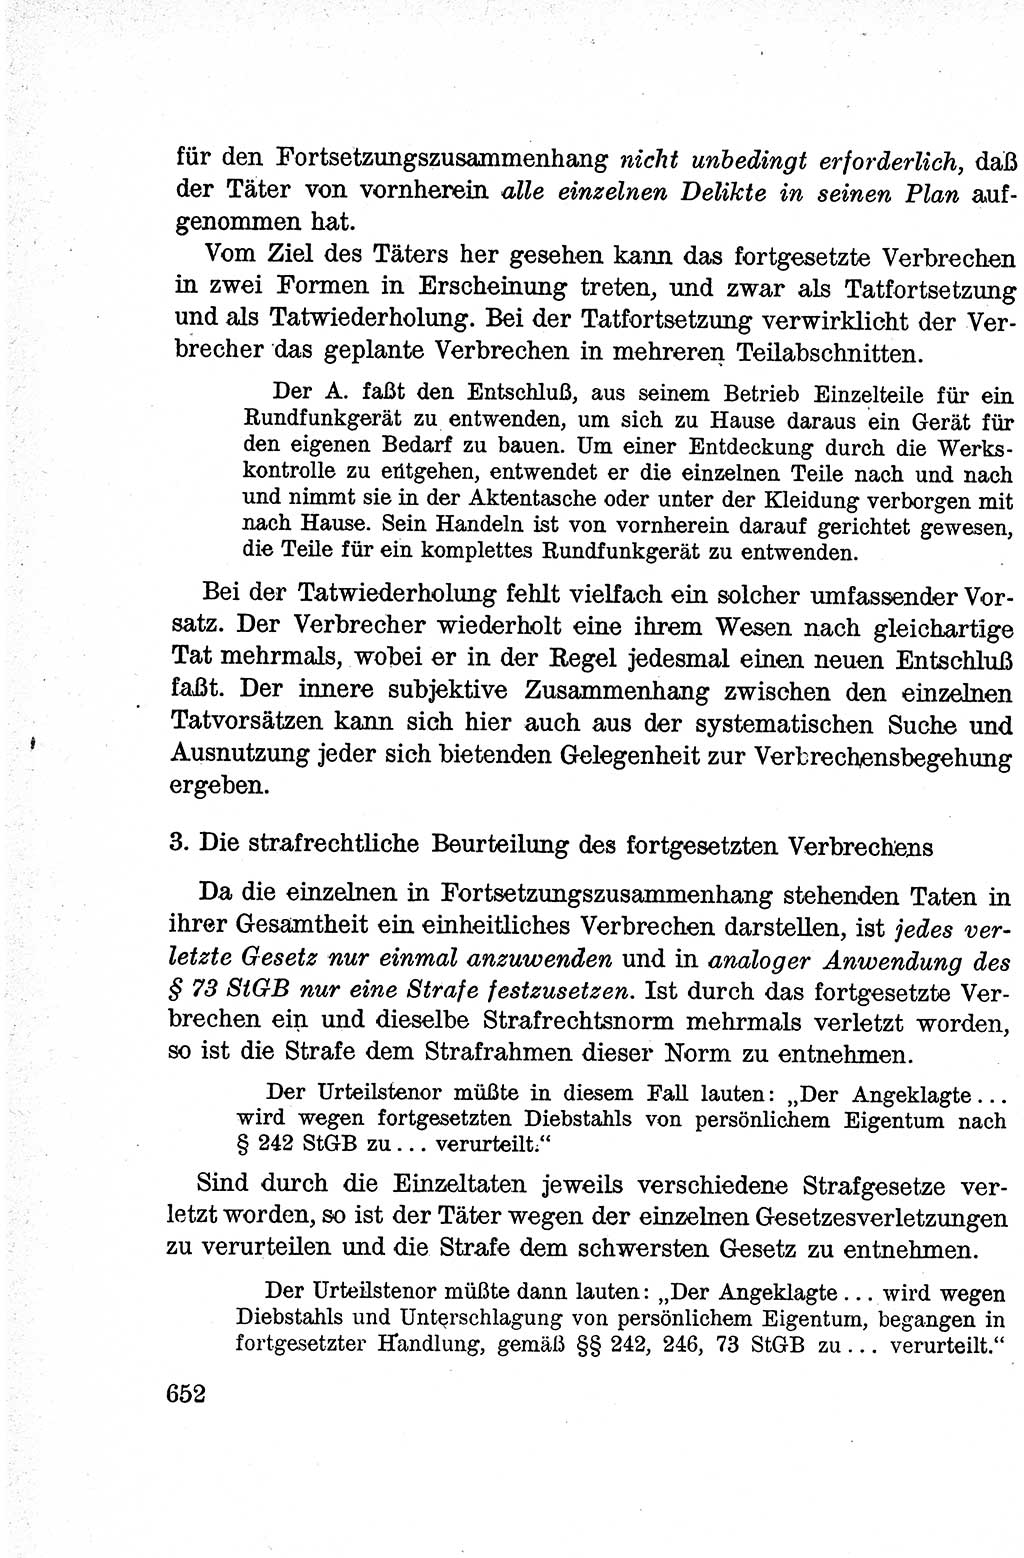 Lehrbuch des Strafrechts der Deutschen Demokratischen Republik (DDR), Allgemeiner Teil 1959, Seite 652 (Lb. Strafr. DDR AT 1959, S. 652)